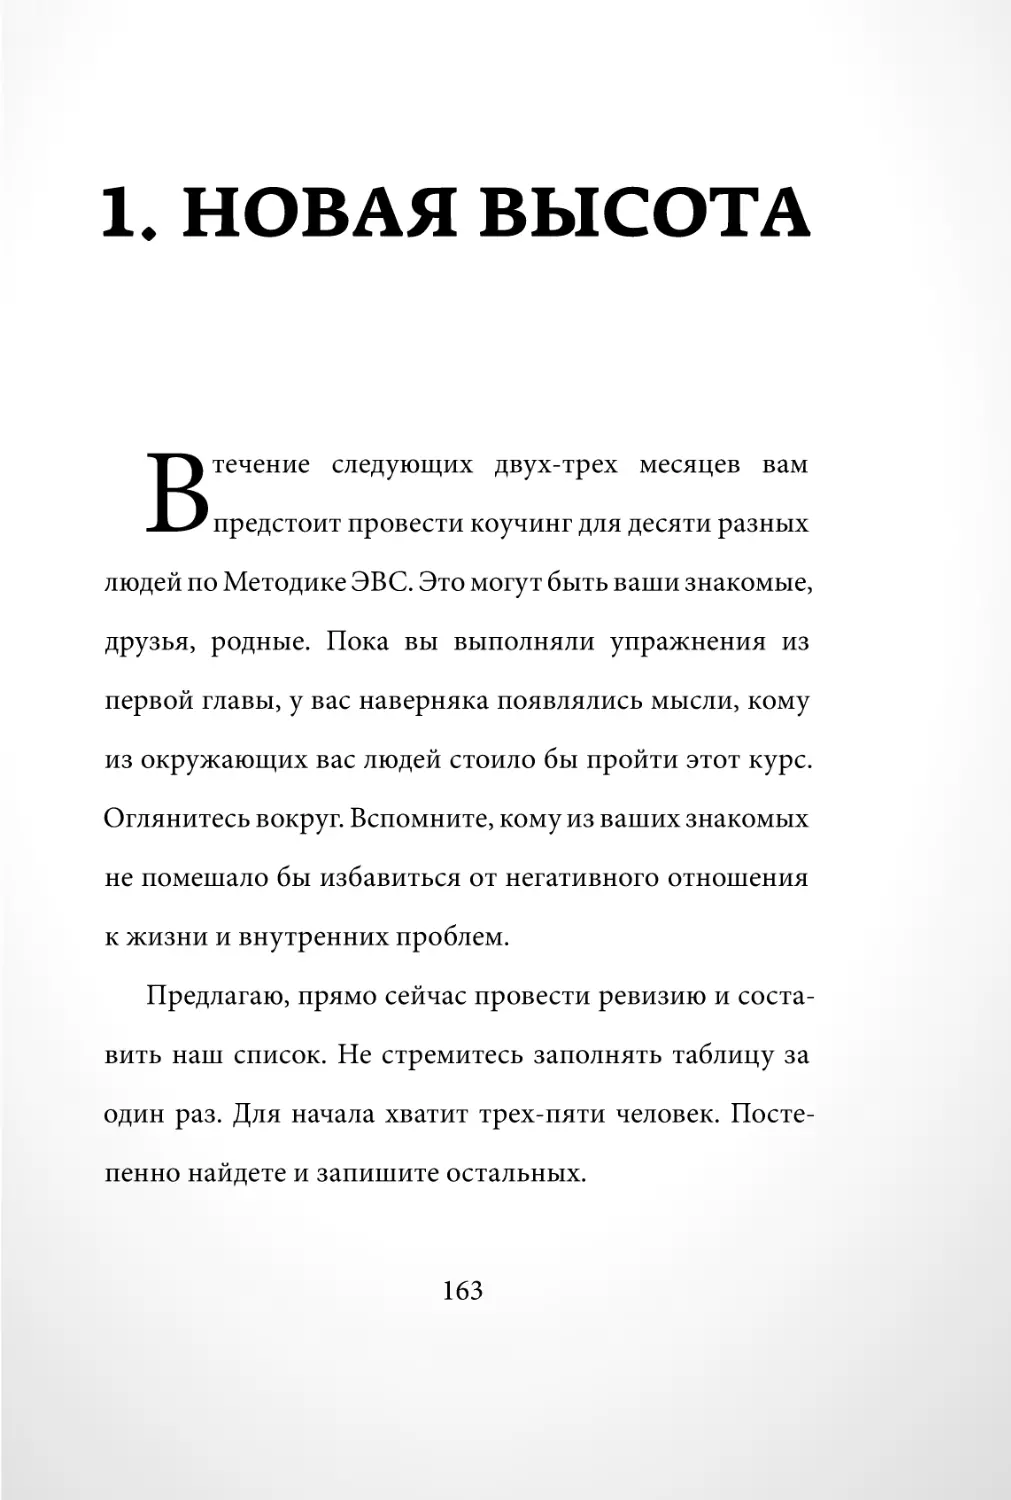 Sergey_Filippov_Dnevnik_samorazvitia_Evolyutsia_Vnutrennego_Sostoyania_163.pdf (p.163)